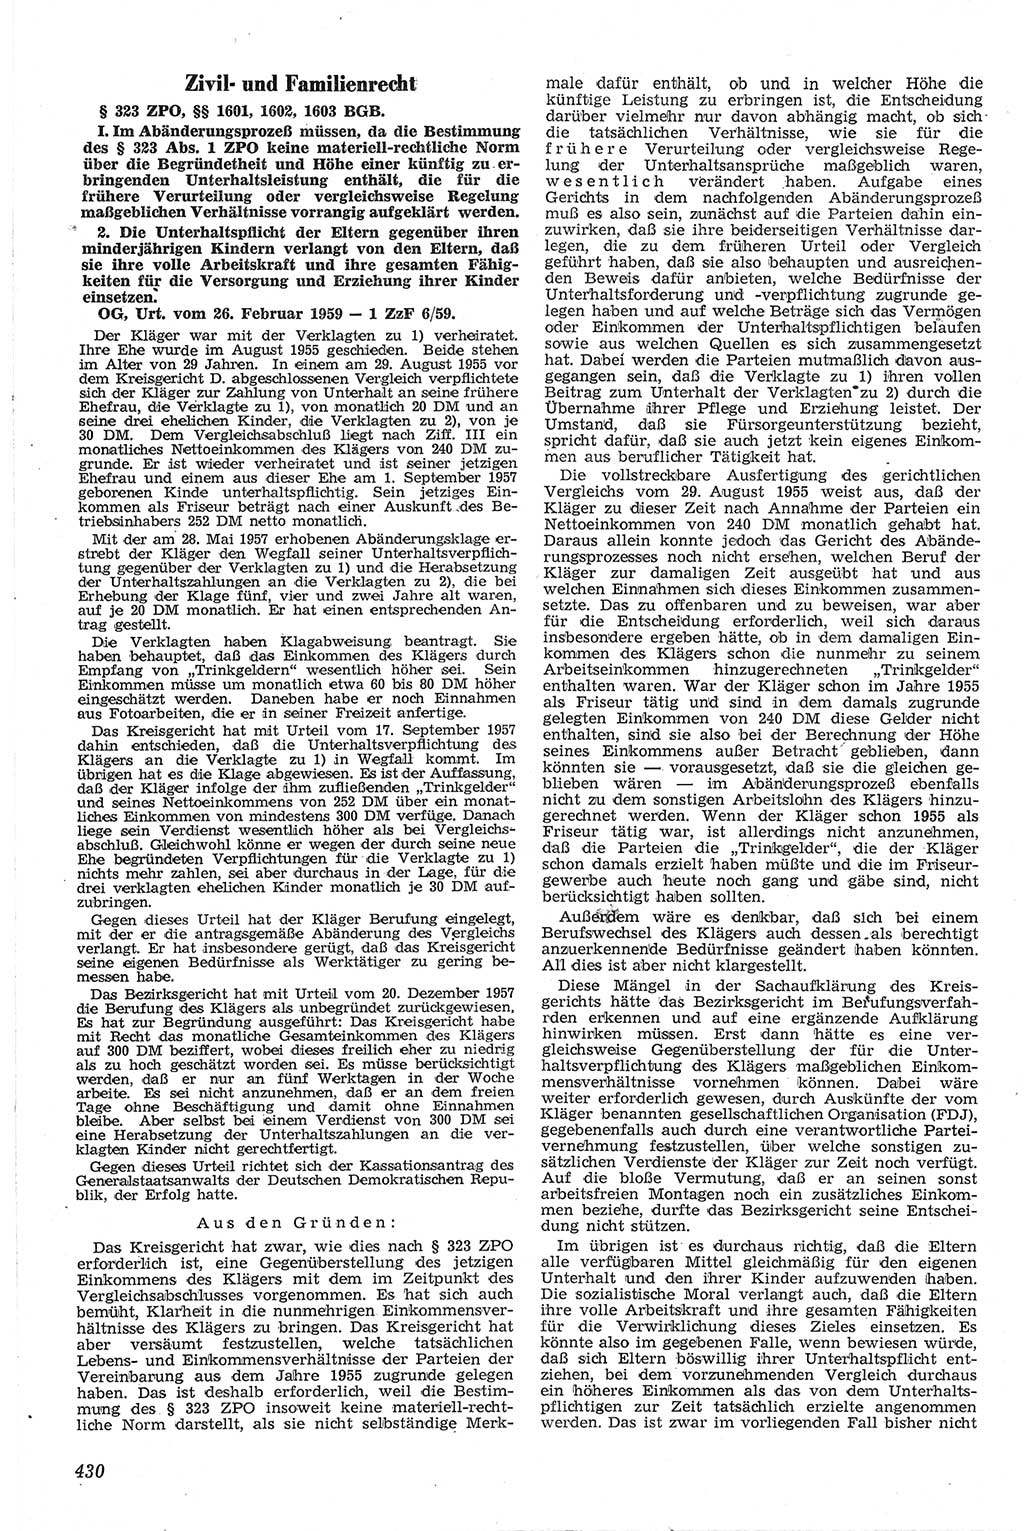 Neue Justiz (NJ), Zeitschrift für Recht und Rechtswissenschaft [Deutsche Demokratische Republik (DDR)], 13. Jahrgang 1959, Seite 430 (NJ DDR 1959, S. 430)